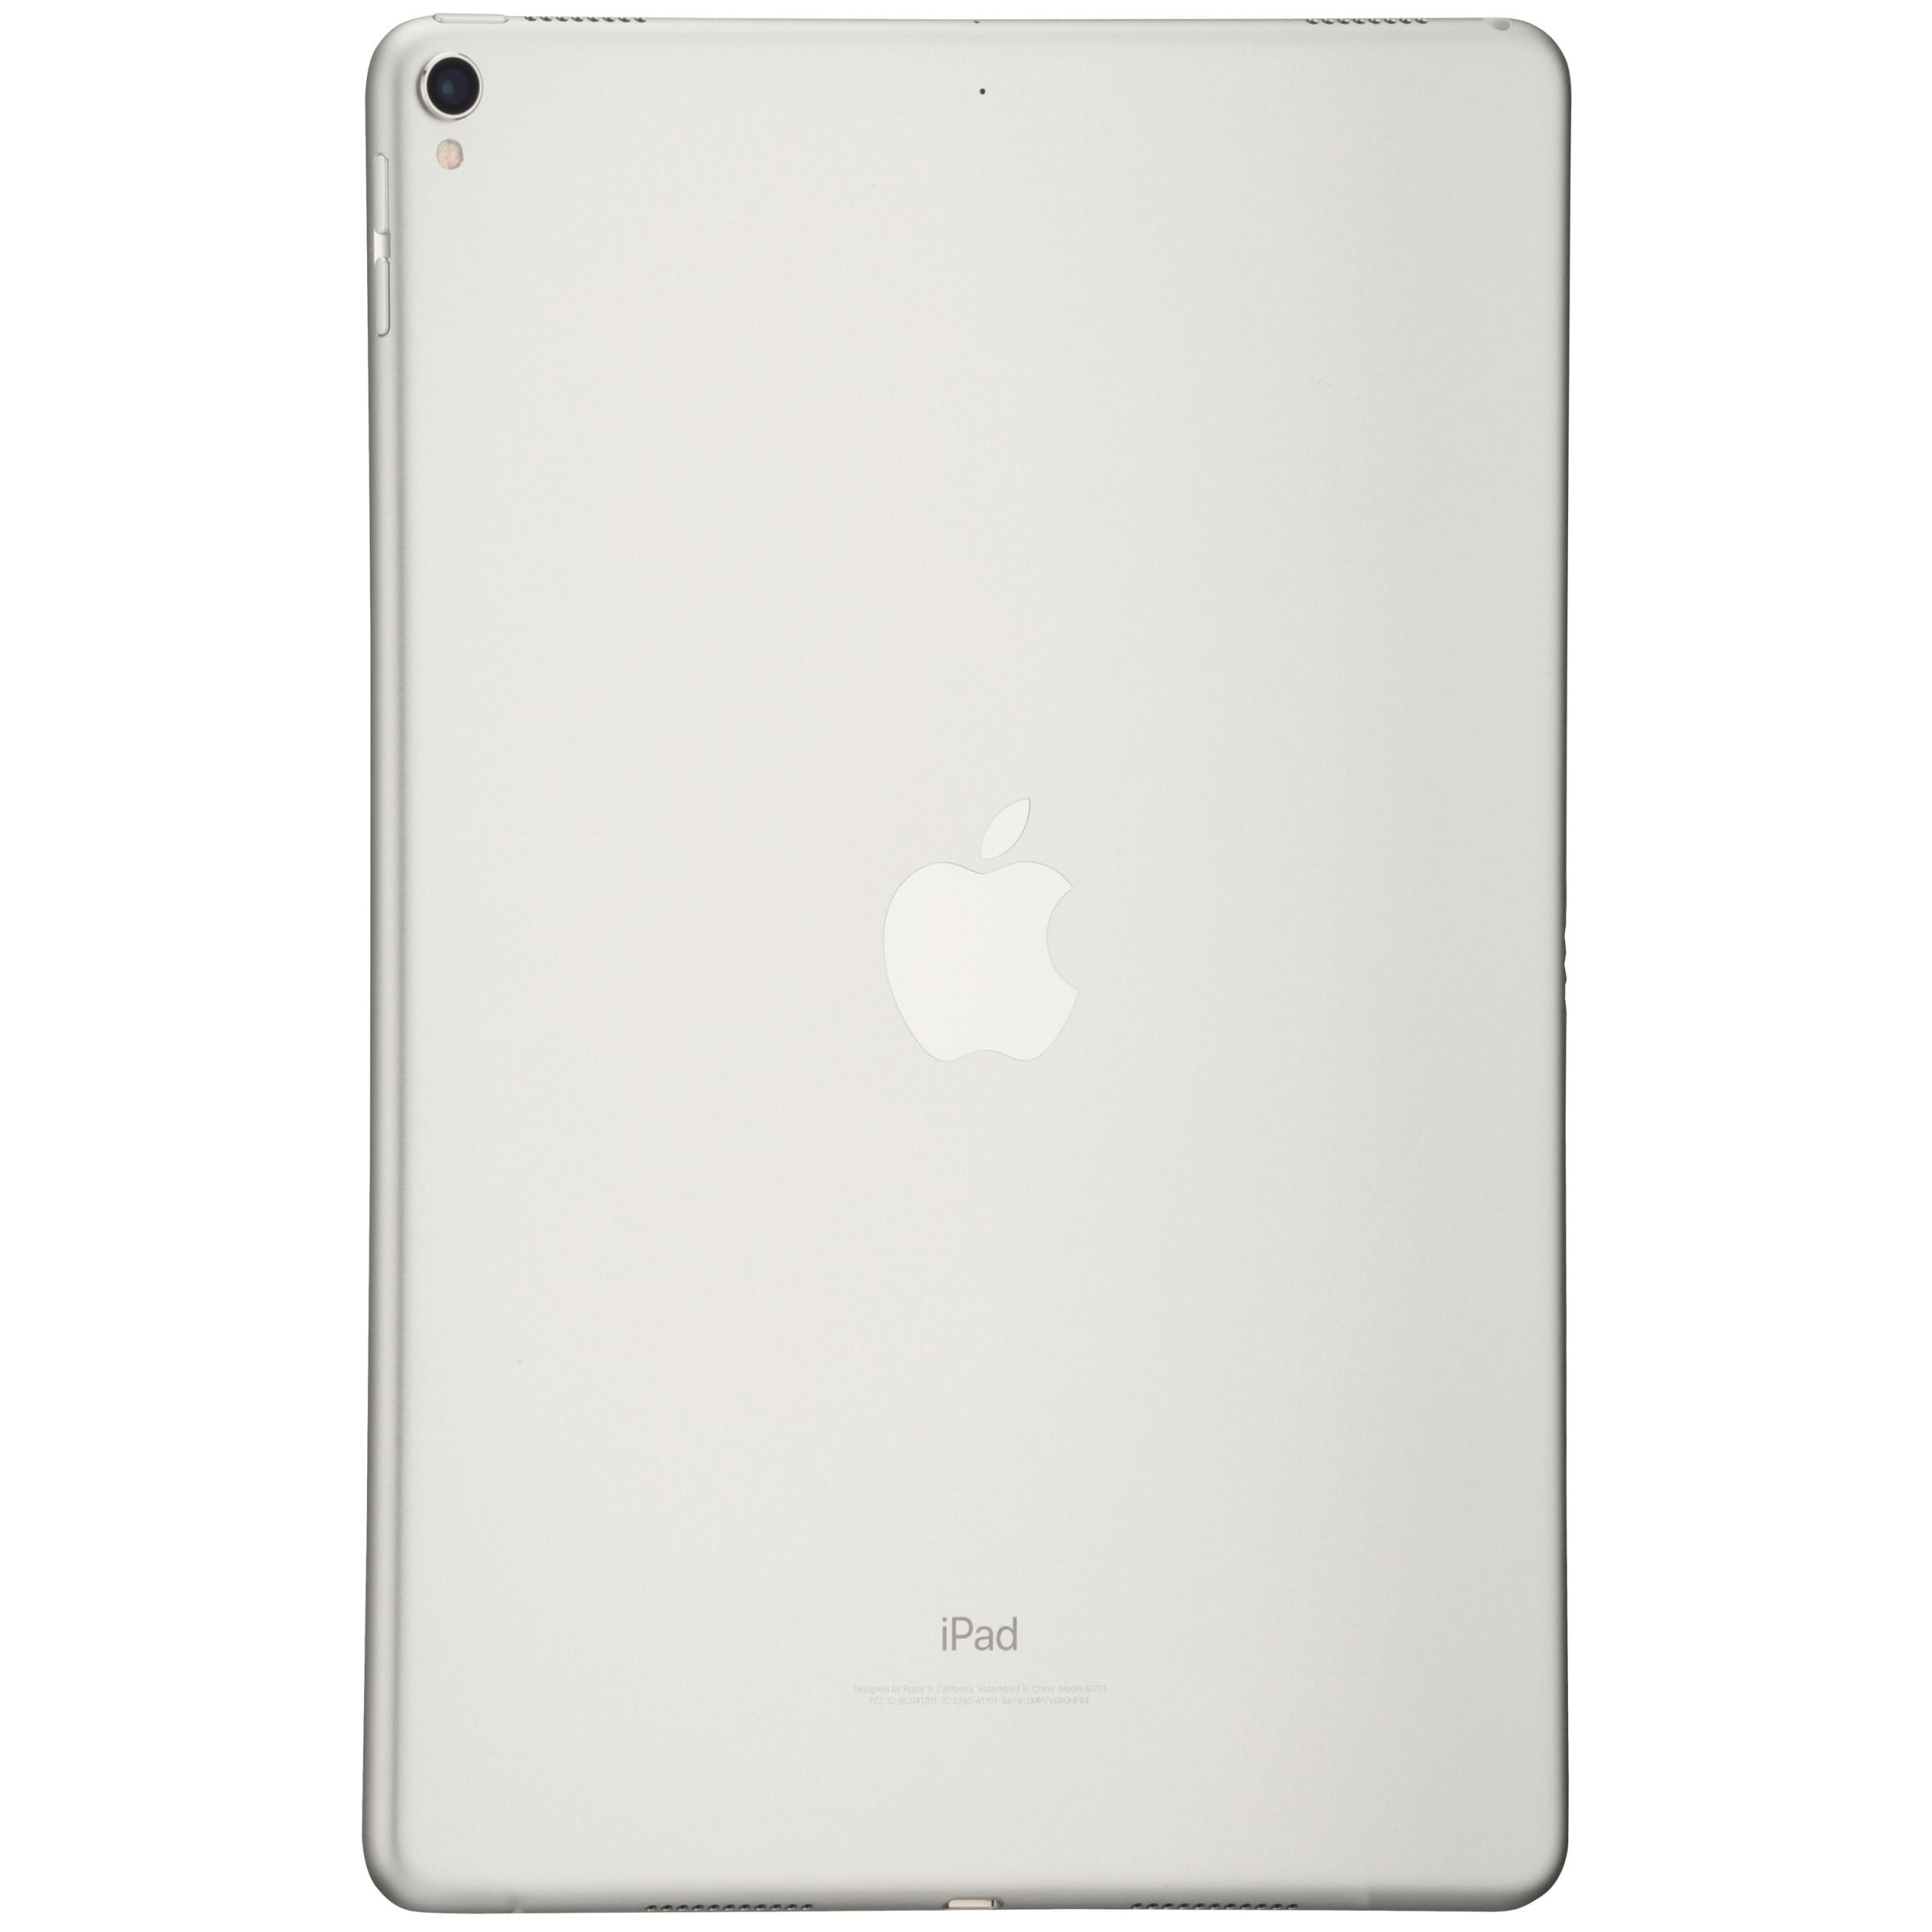 Apple 10.5-inch iPad Pro Wi-Fi 256GB (2017 Model), Gold - Walmart.com